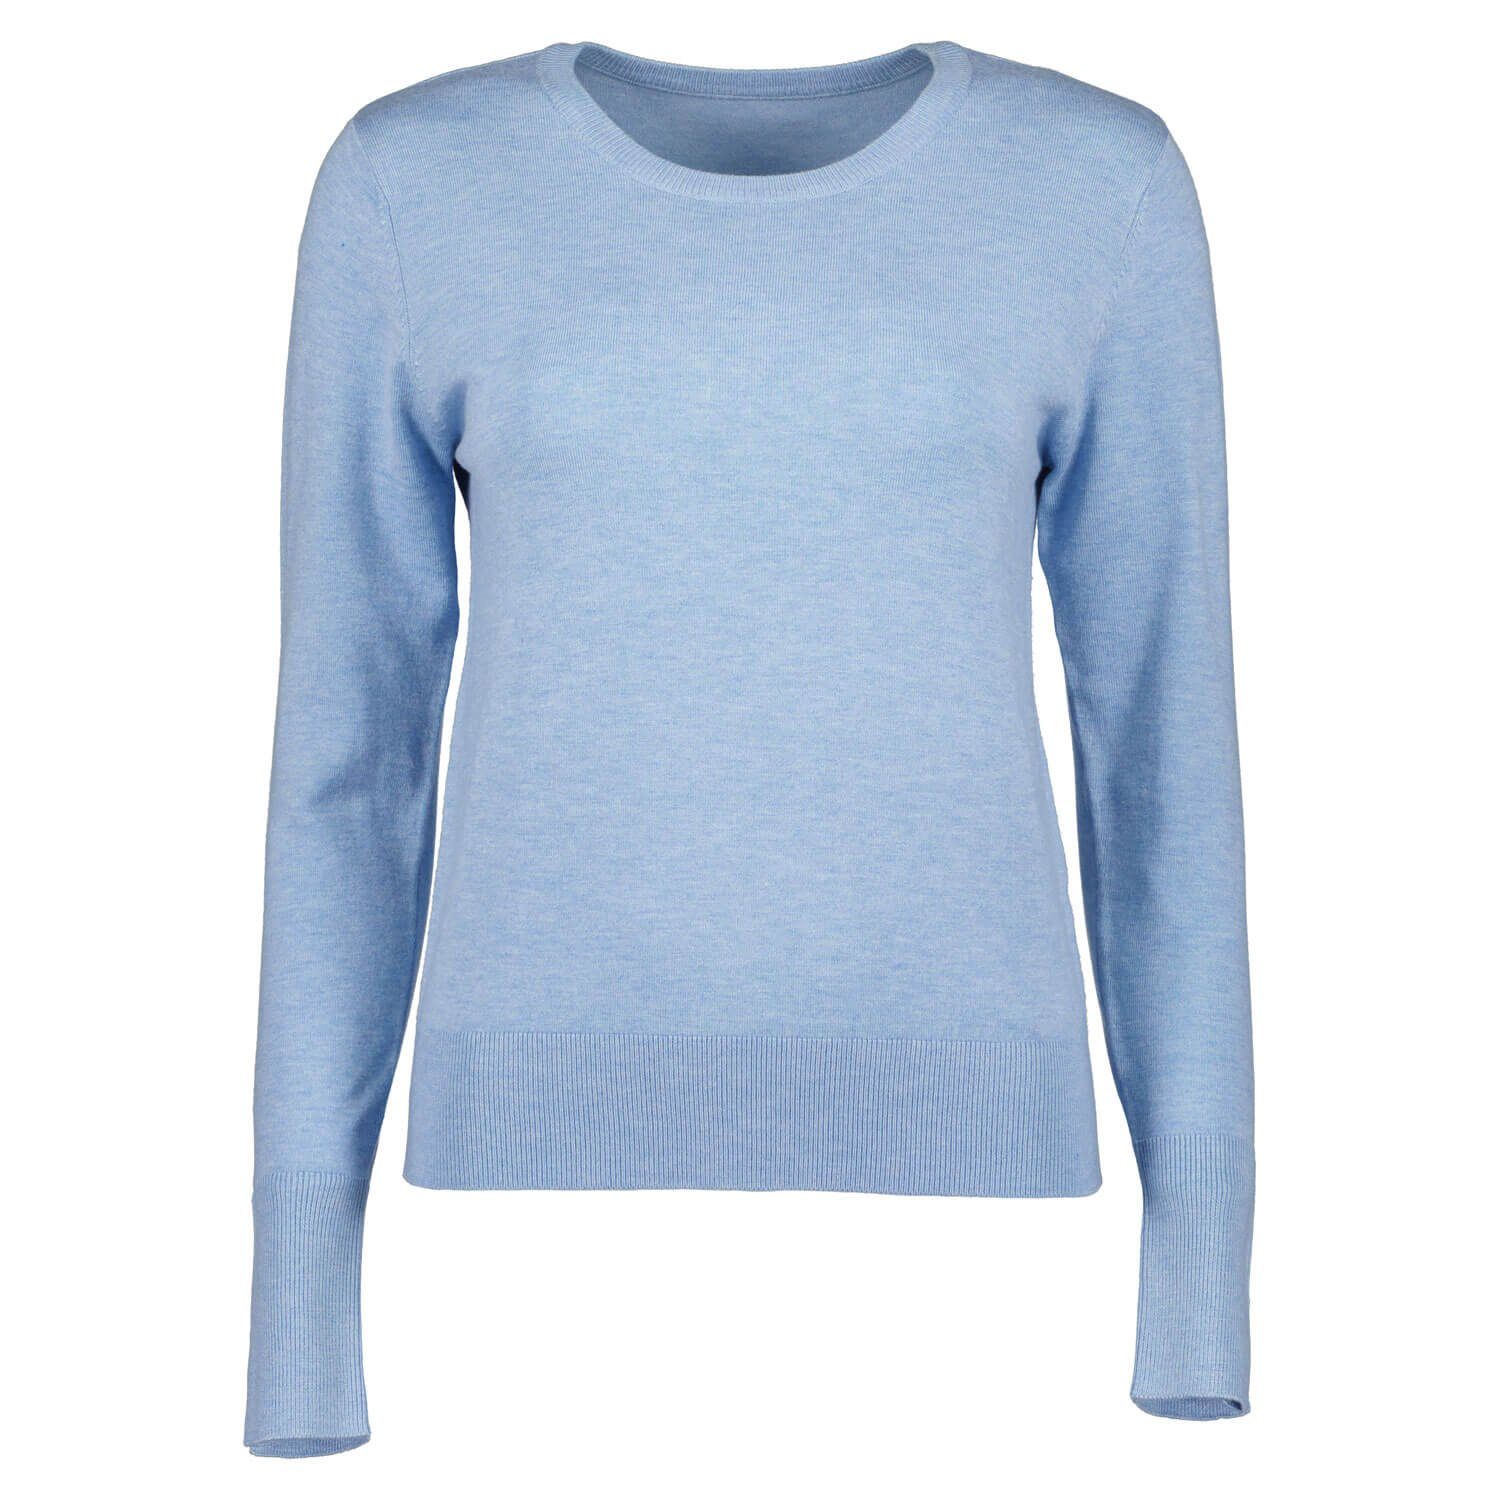 Pullover Seven Unifarben hellblau Meliert Damen - Rundhalspullover Pulli mit Rundhalsausschnitt Blue